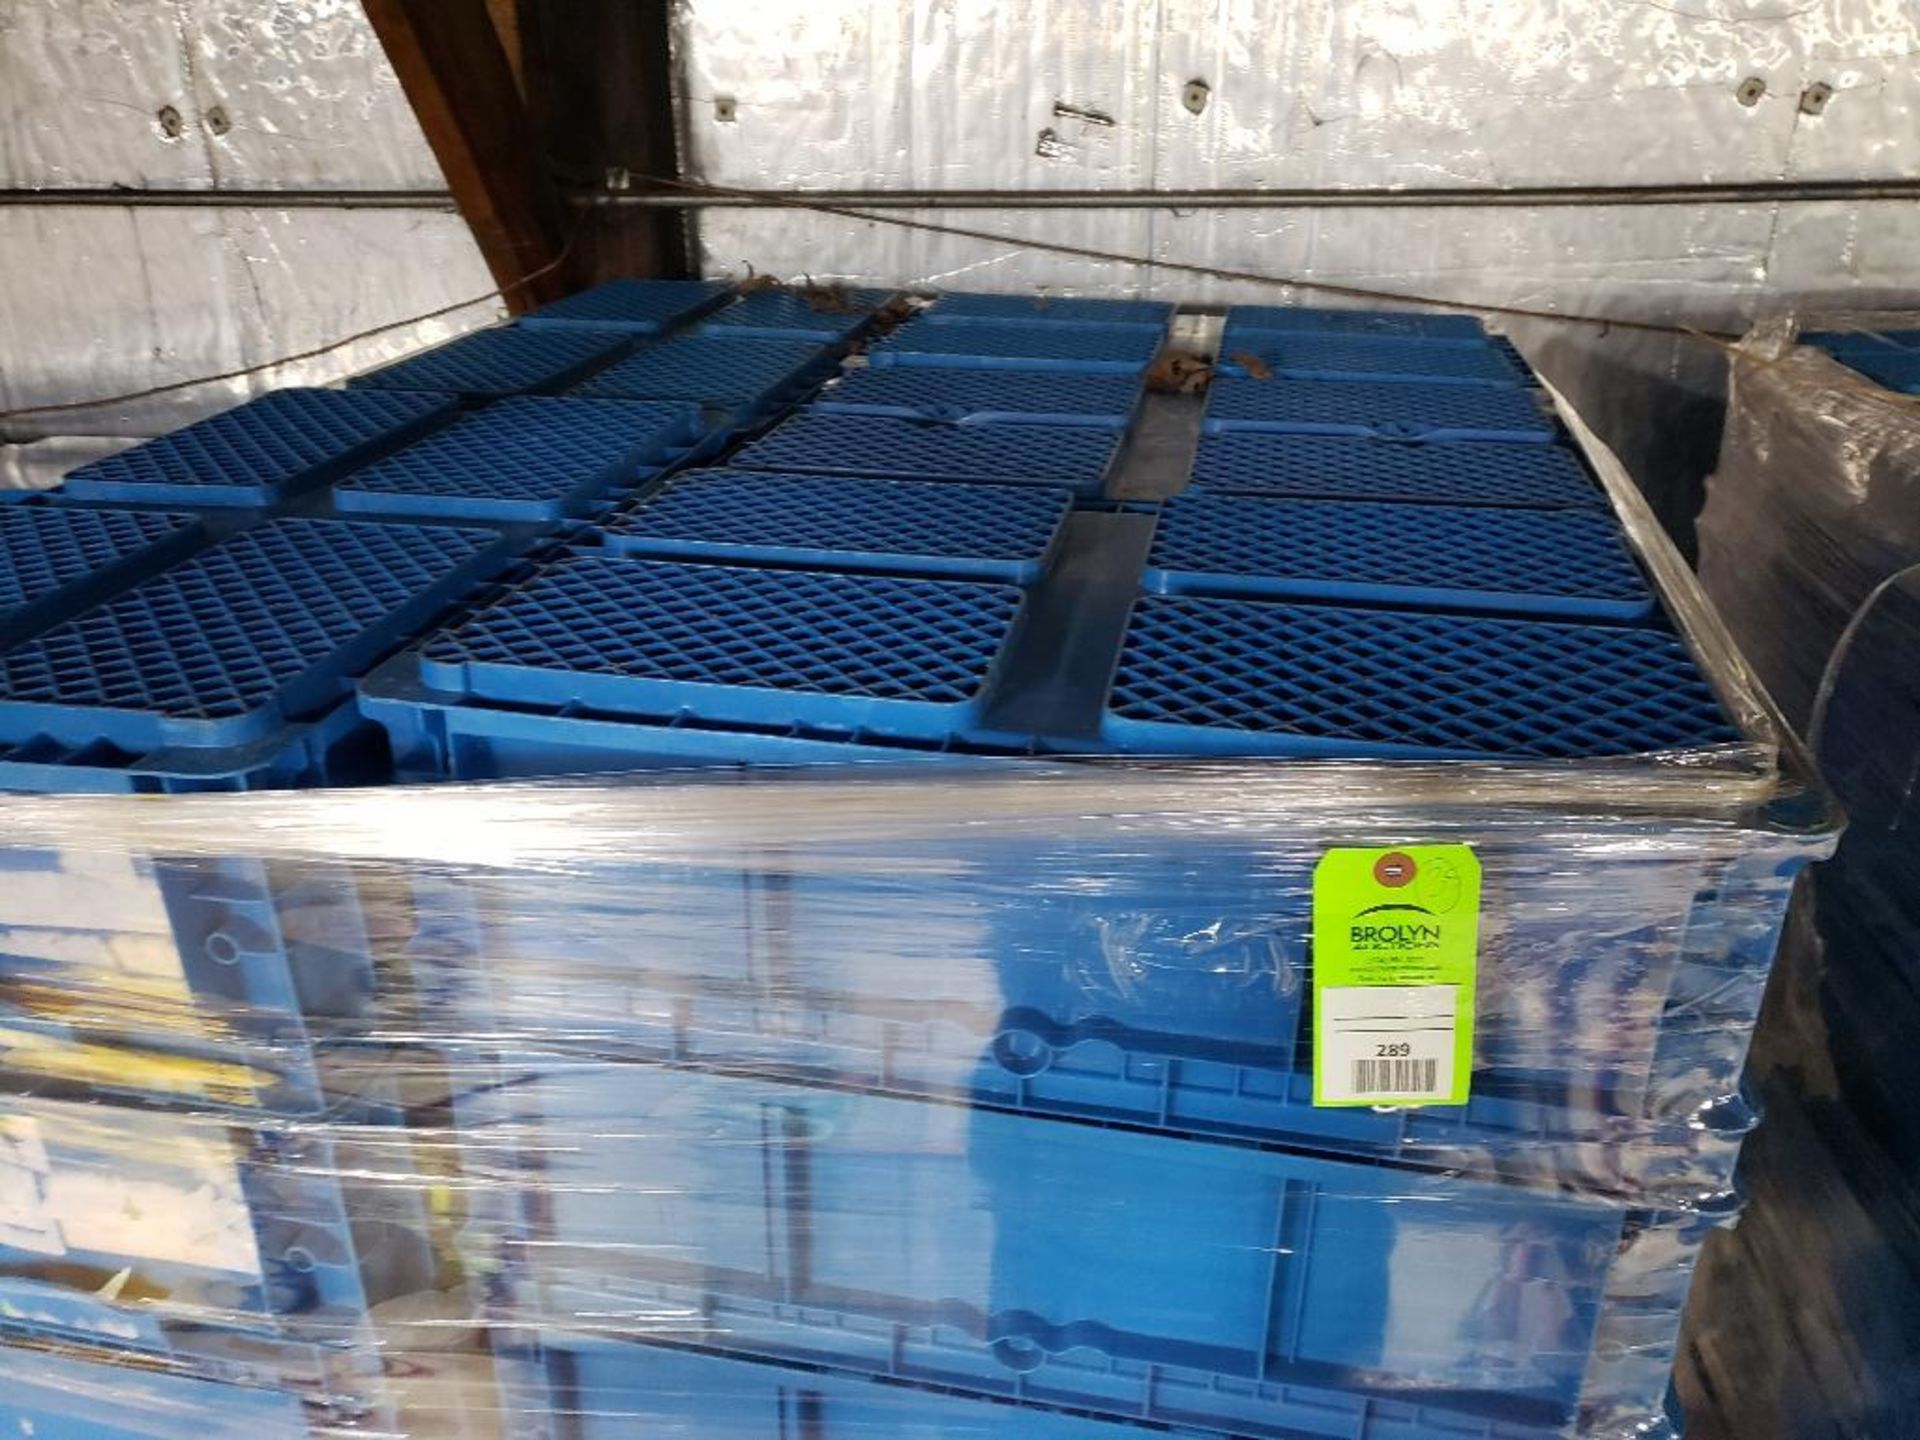 Qty 35 - plastic storage bins.